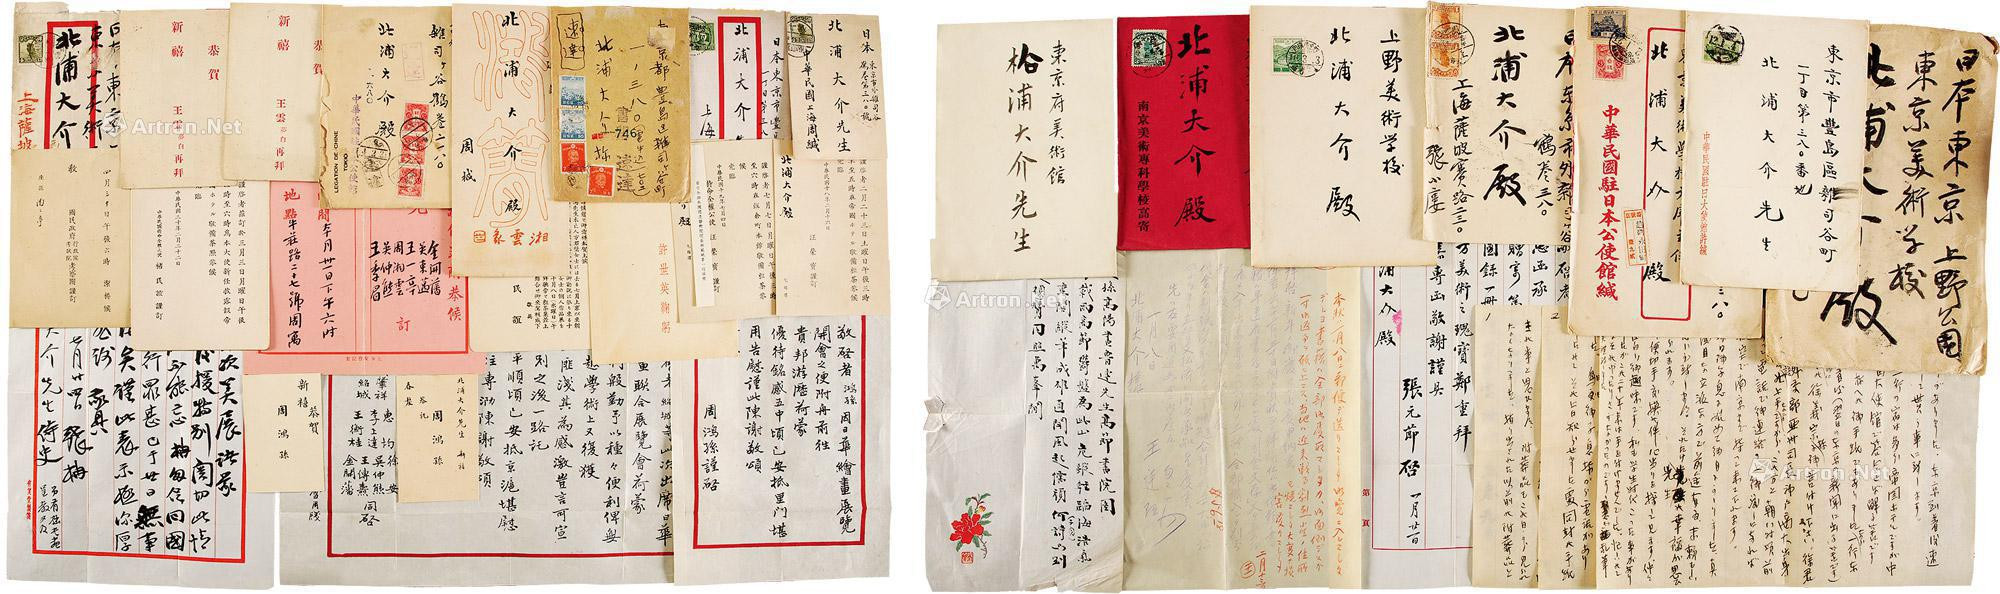 Group of letters and greeting card invitation of Jin Kaifan， Wang Tingjue， Chu Minyi， Wang Rongbao， Xu Shiying， Wang Mengbai， etc， with original covers